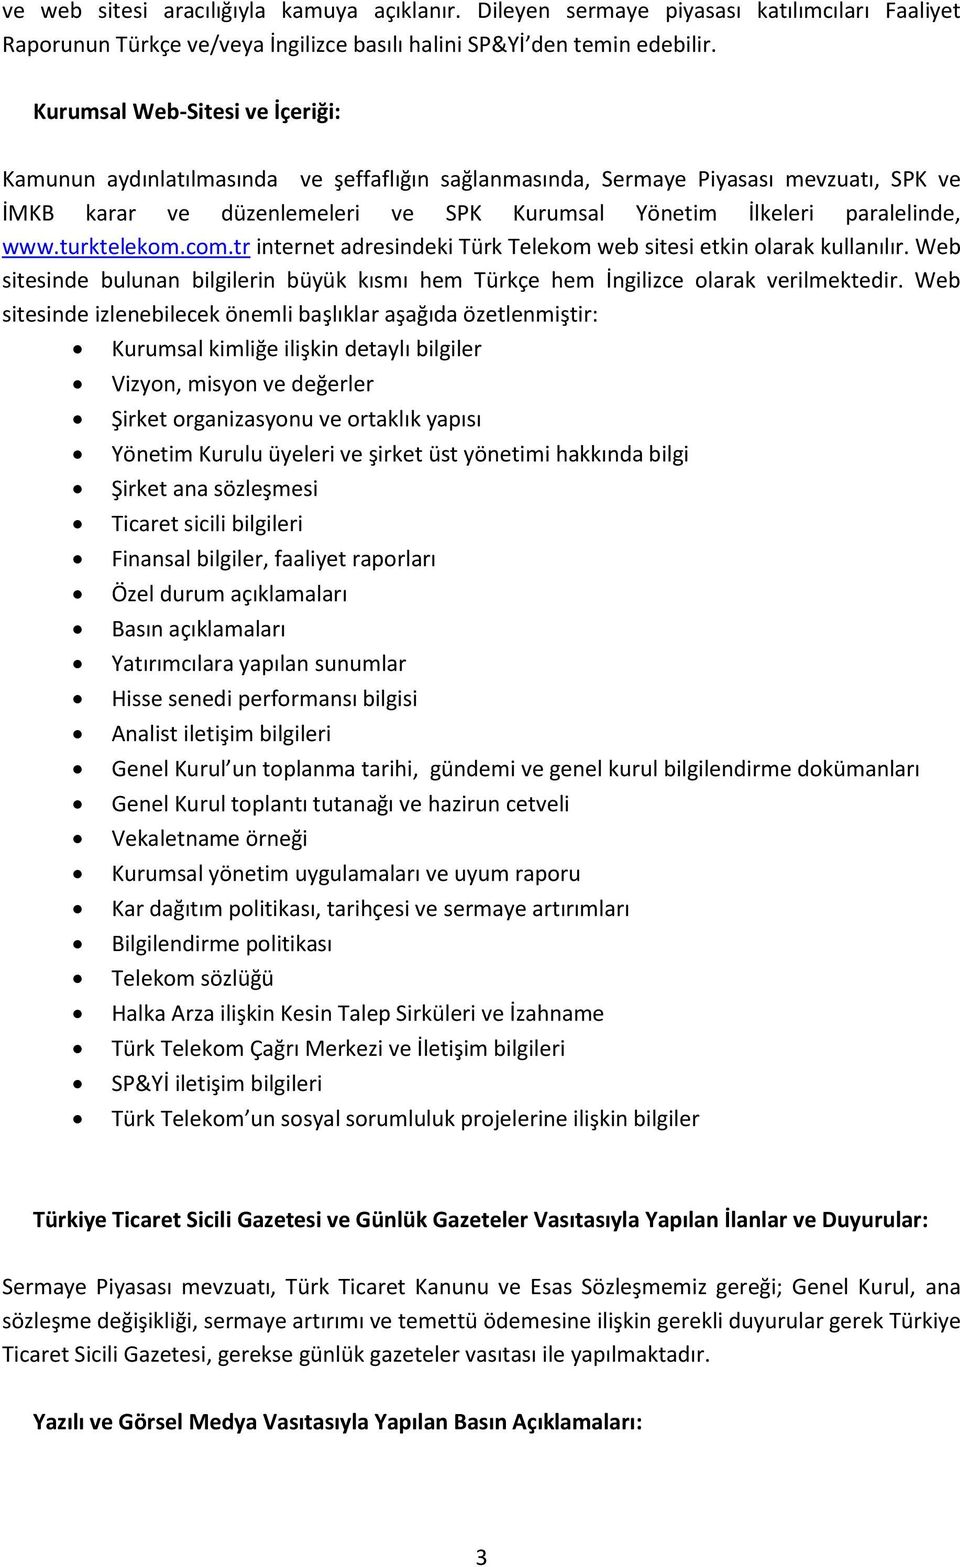 turktelekom.com.tr internet adresindeki Türk Telekom web sitesi etkin olarak kullanılır. Web sitesinde bulunan bilgilerin büyük kısmı hem Türkçe hem İngilizce olarak verilmektedir.